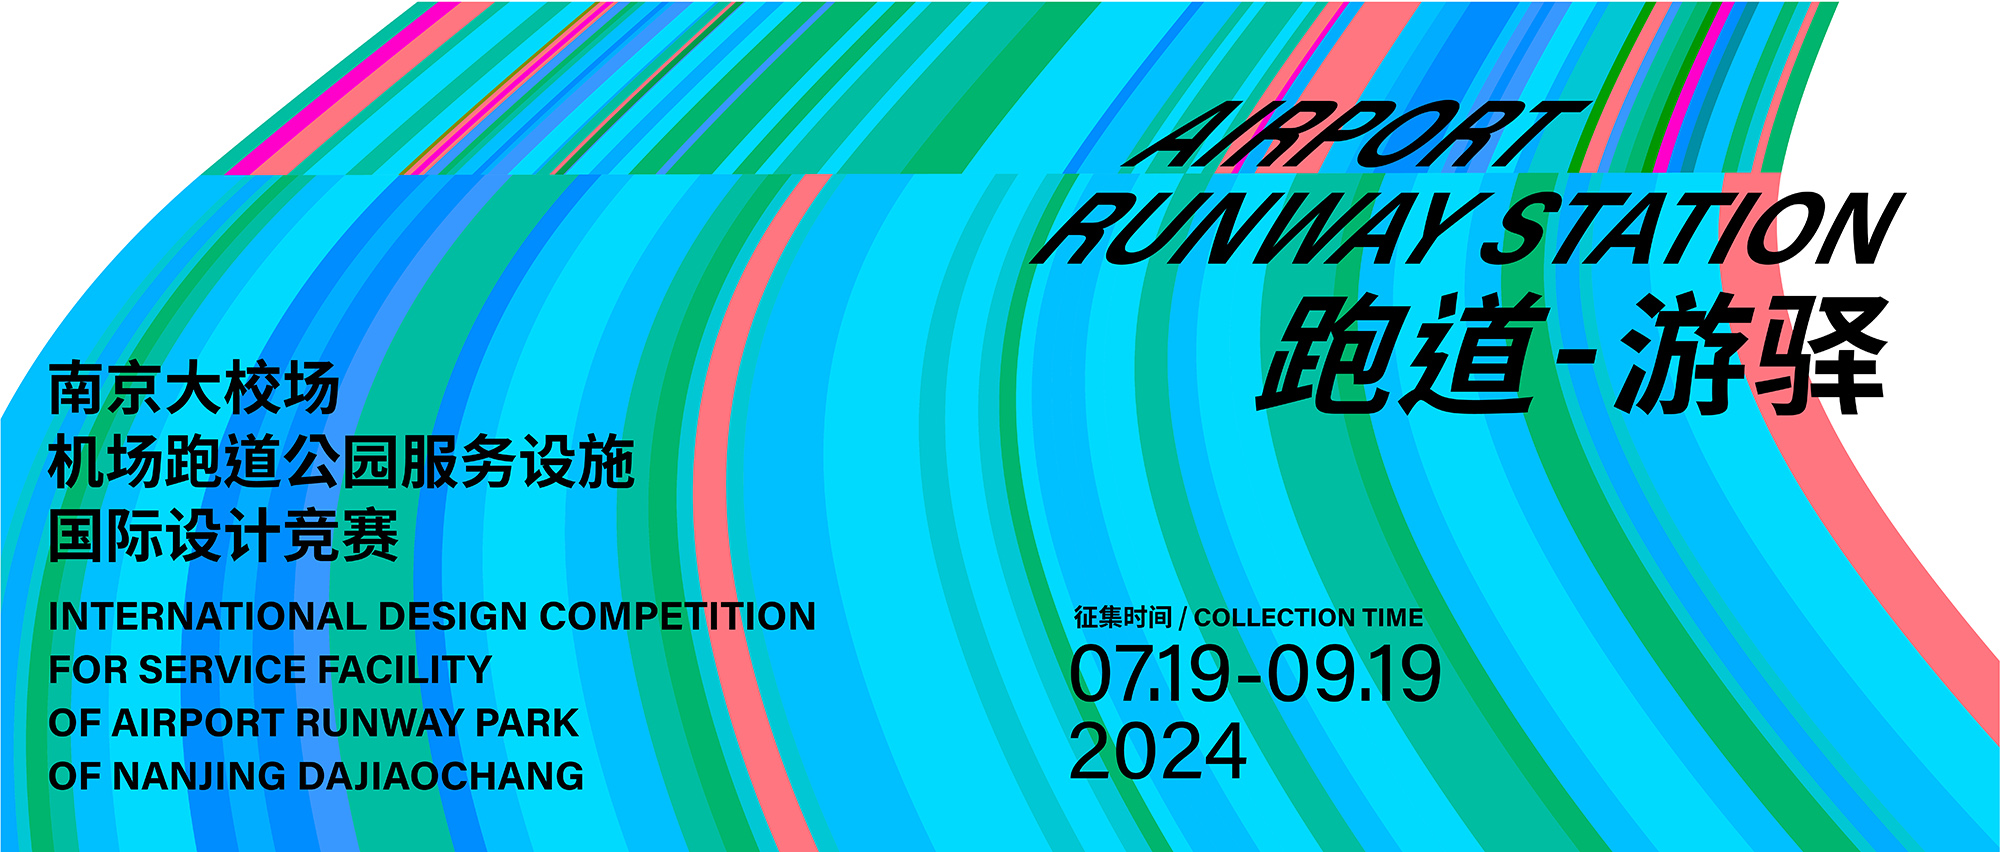 跑道游驿|南京大校场机场跑道公园服务设施国际设计竞赛